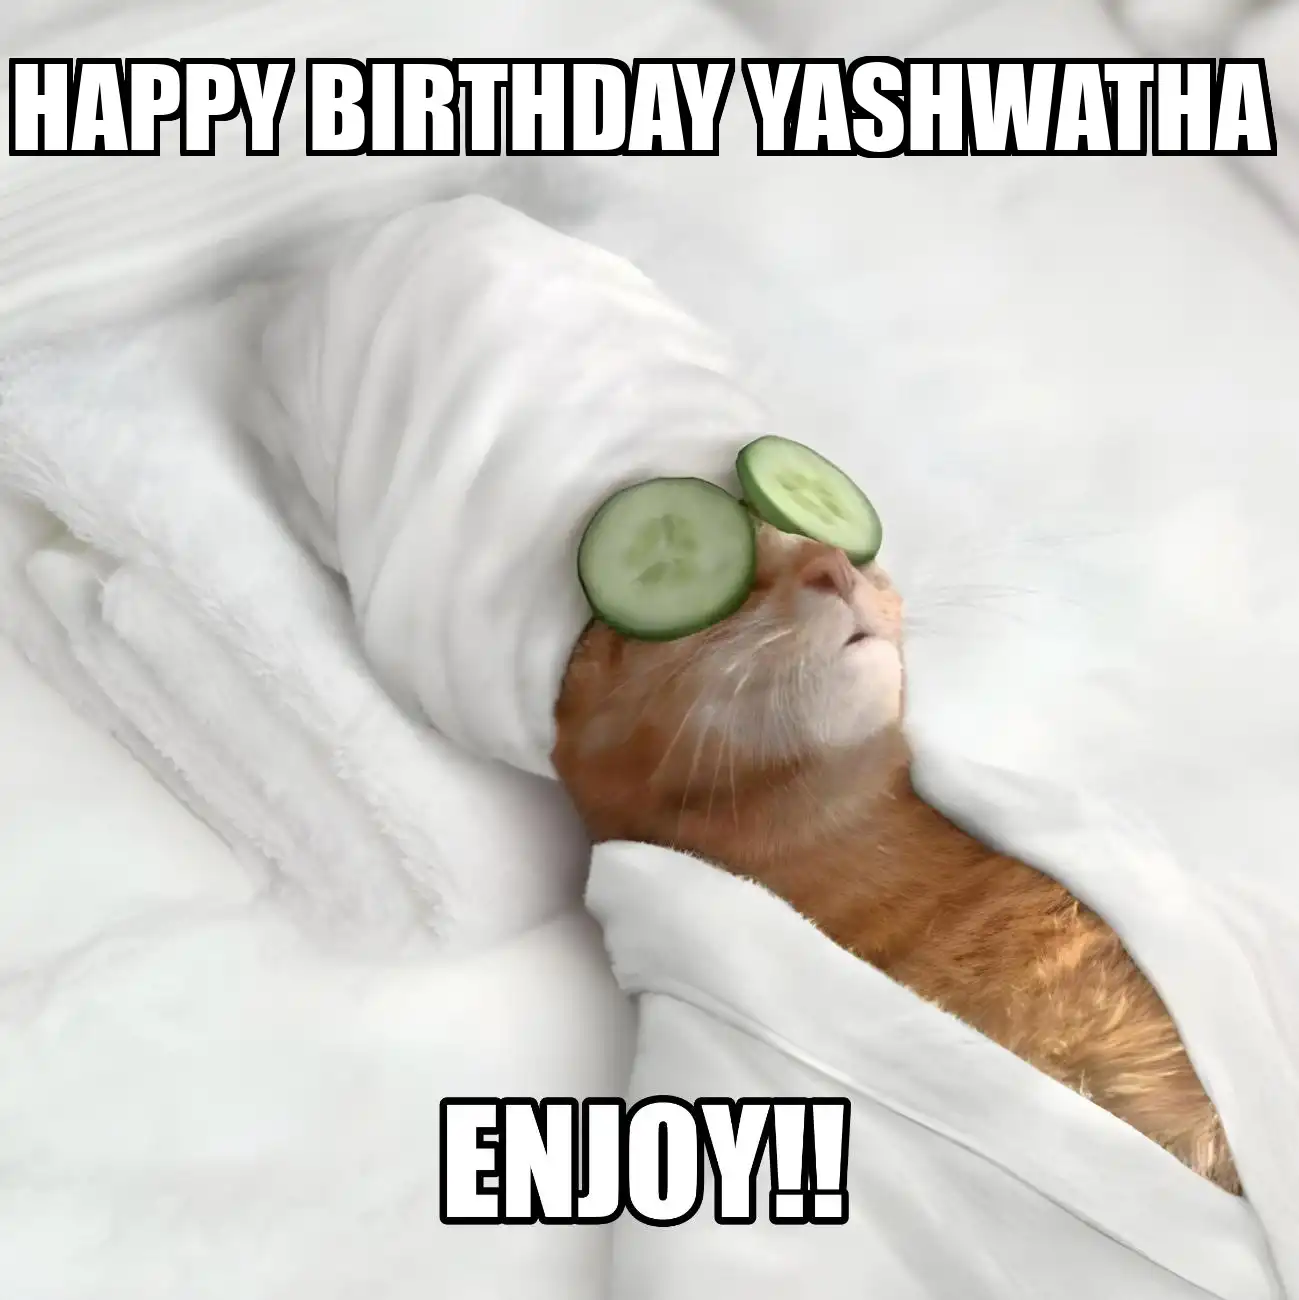 Happy Birthday Yashwatha Enjoy Cat Meme